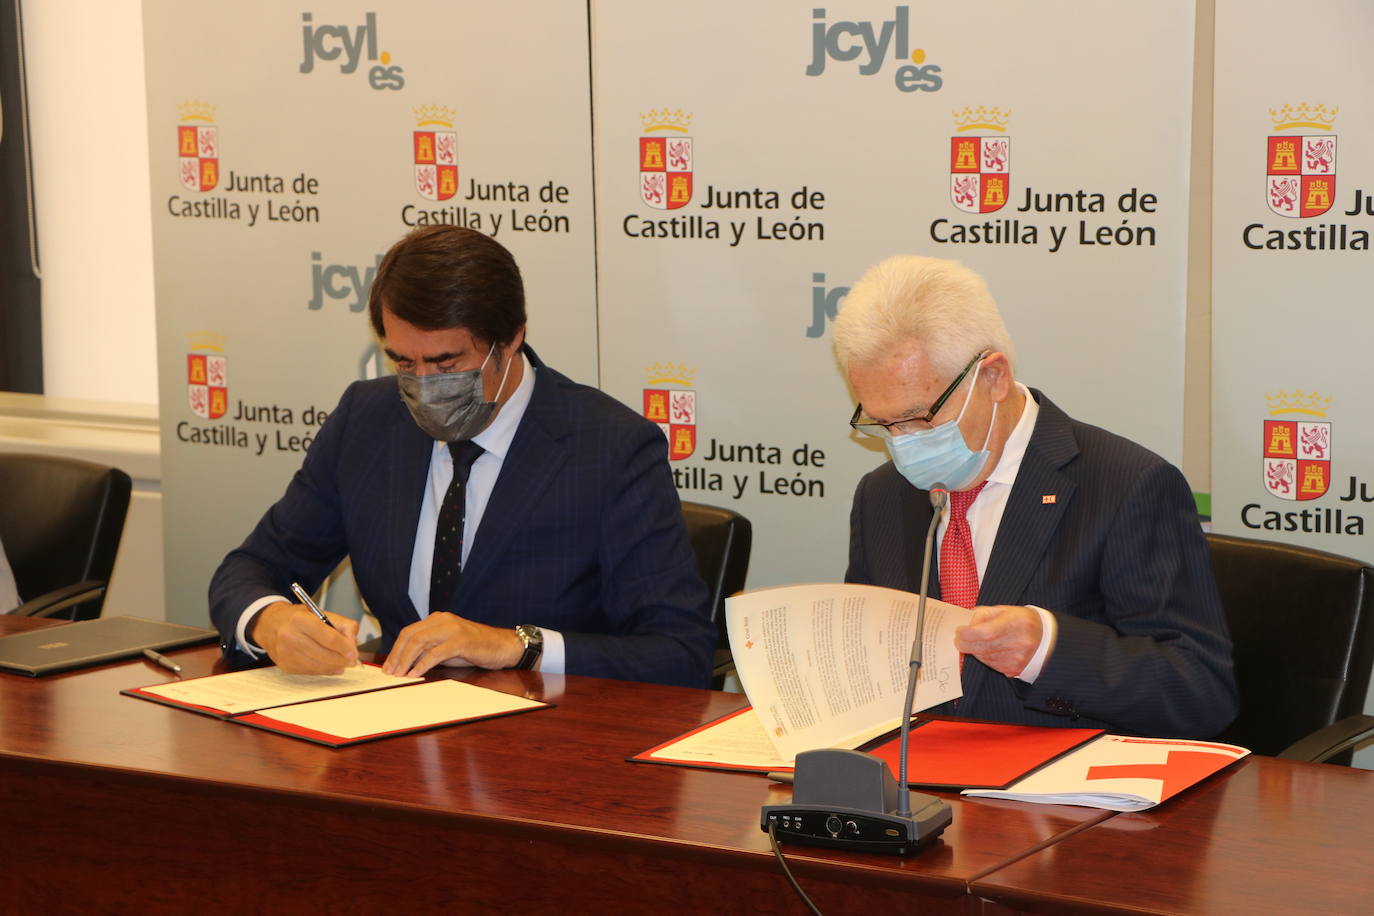 Las dos organizaciones firman un acuerdo para repoblar con árboles 23.000 hectáreas de la comunidad.